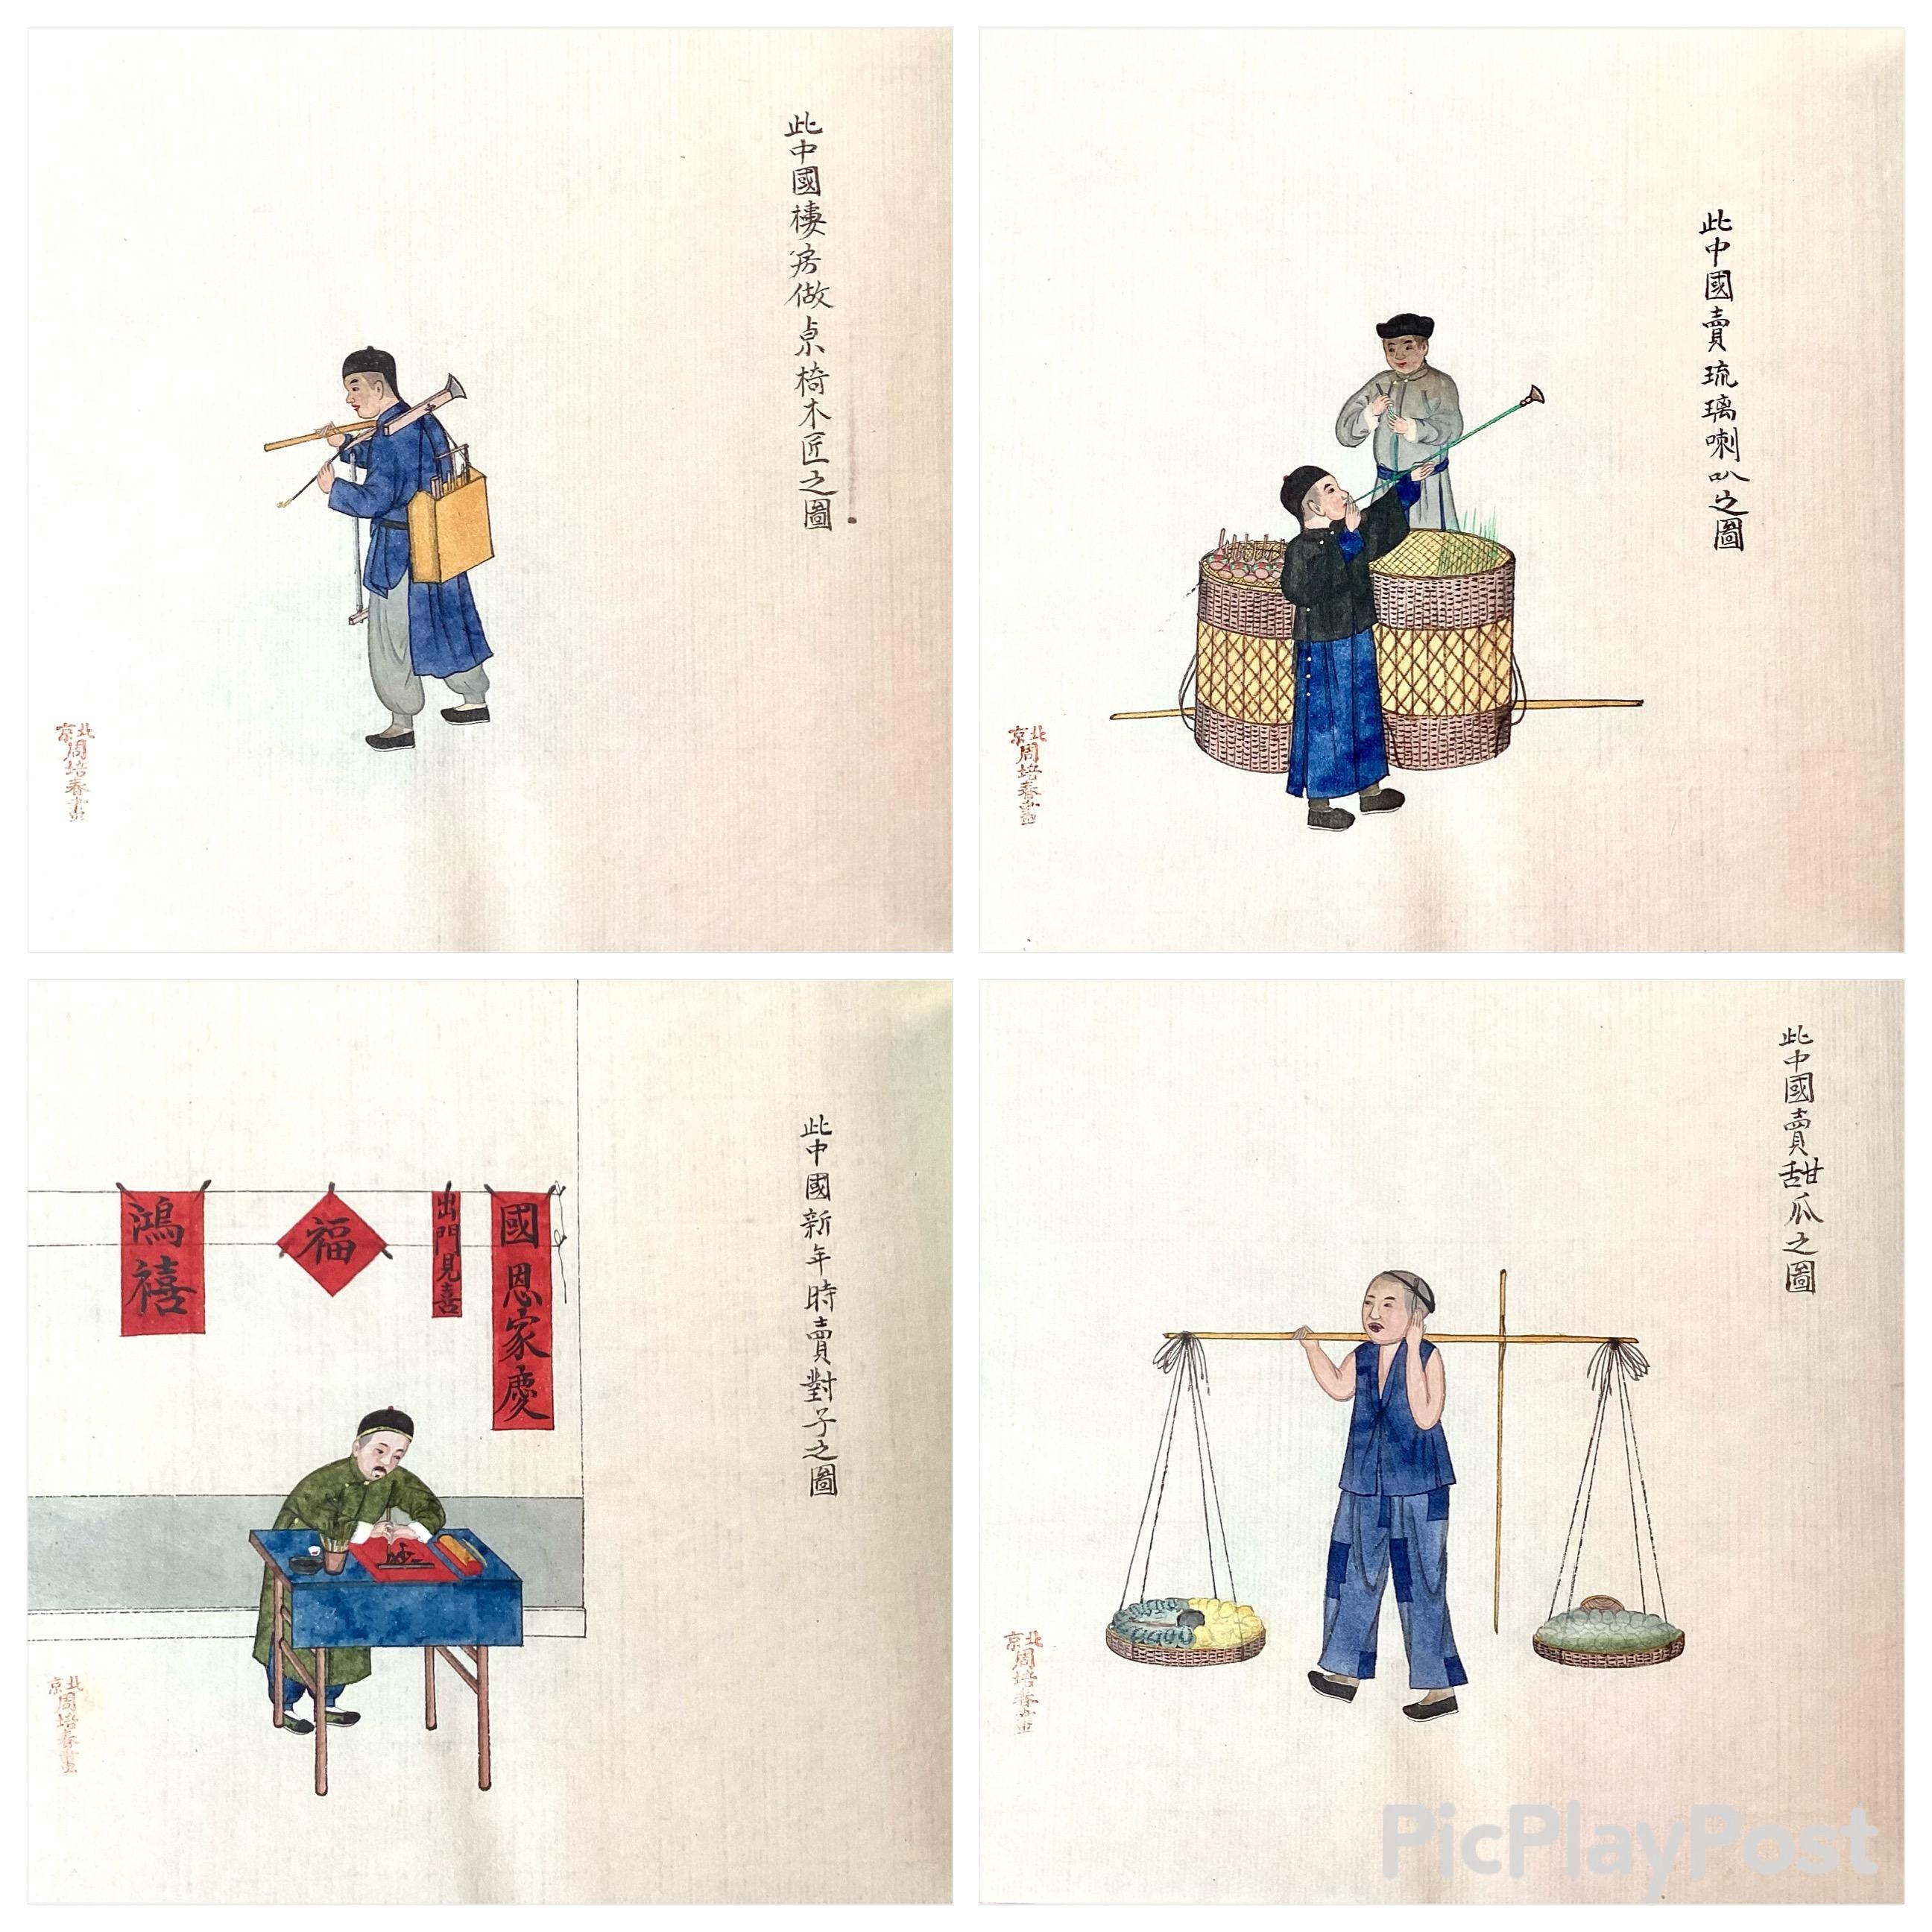 Seltene chinesische Exportschule. 24 Miniaturen in Aquarell und Körperfarbe auf Markpapier. Album mit Prägemalereien, die Berufe und Tätigkeiten darstellen. Chinesisch, 19. Jahrhundert, mit Seidenfaden gebunden. Jedes Gemälde enthält Zeichnungen